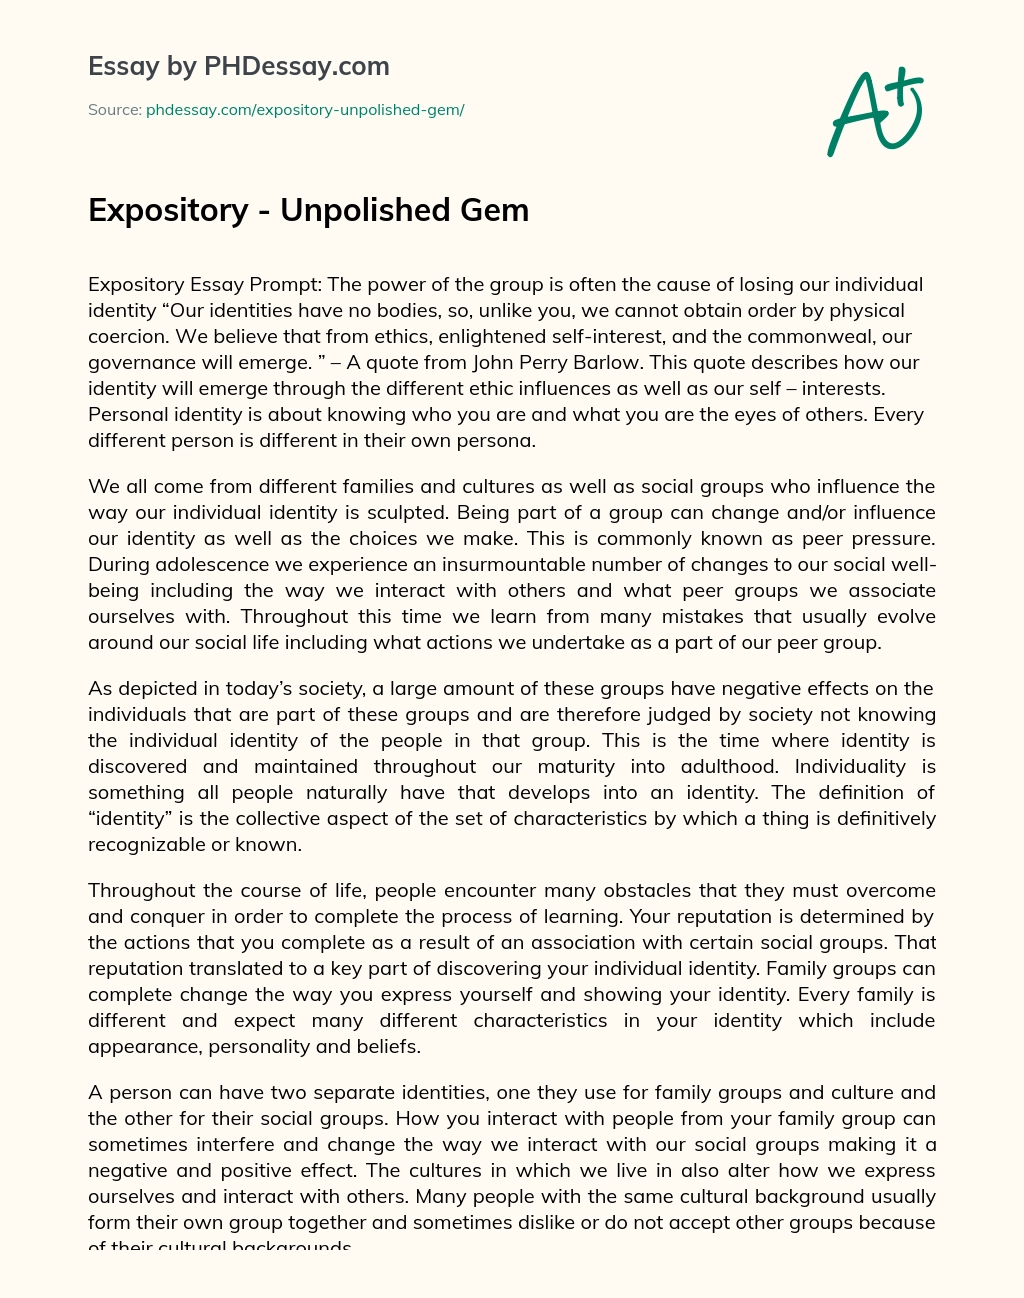 Expository – Unpolished Gem